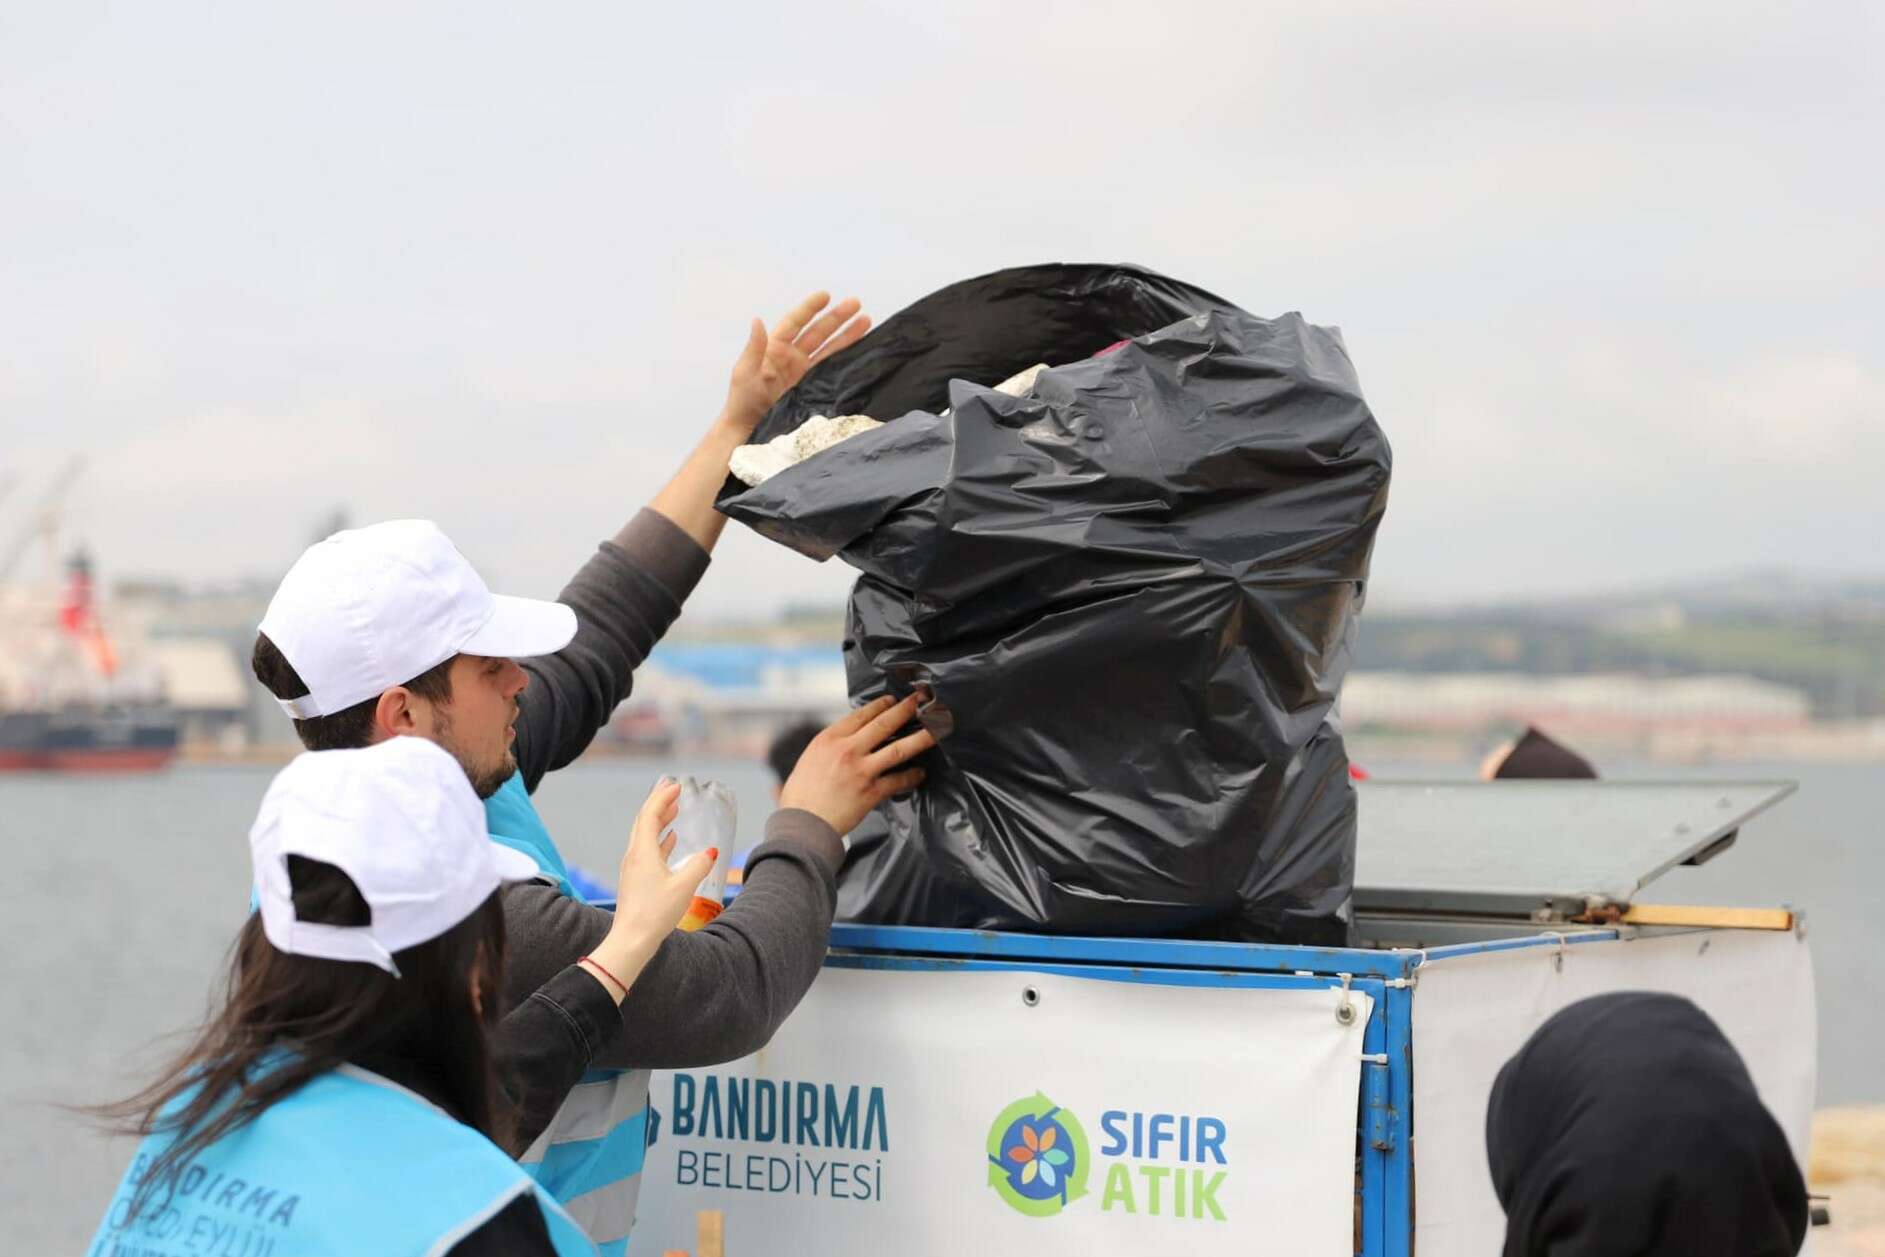 Bandırma'da derinlemesine kıyı temizliği... 1 saatte 780 kilogram atık çıktı